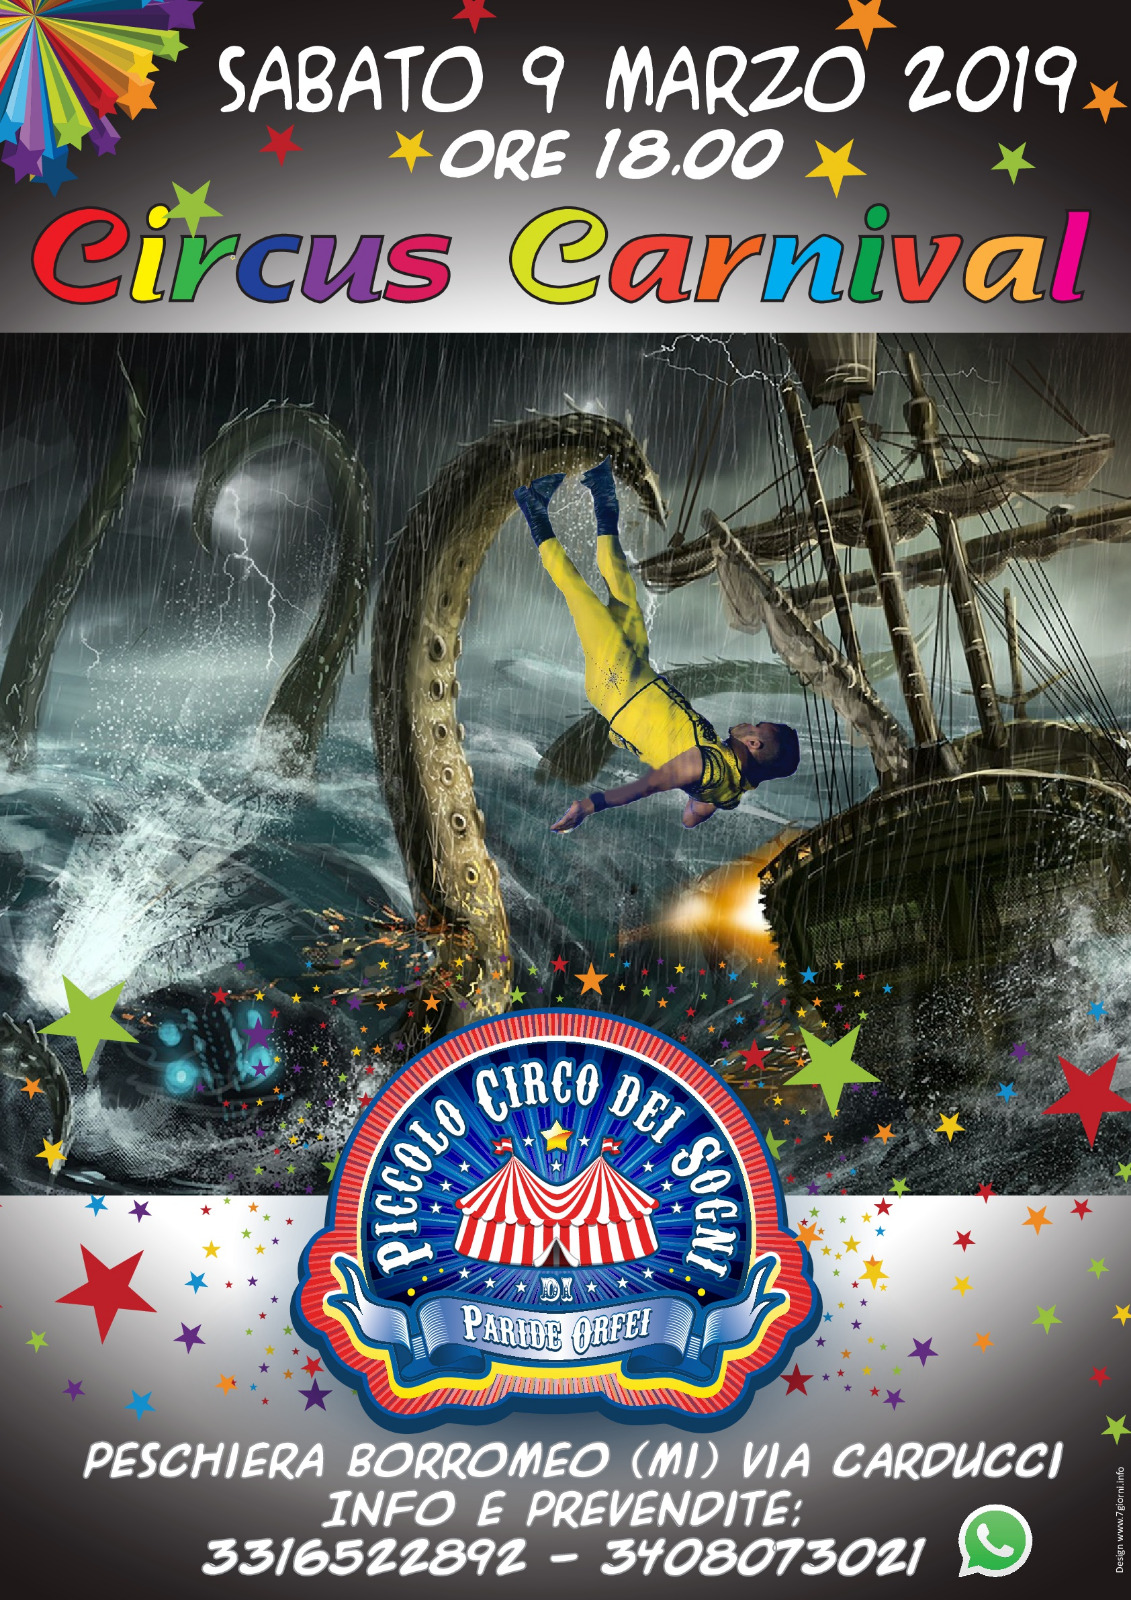 Circus Carnival: l’incredibile spettacolo di Carnevale al circo di Peschiera Borromeo (Milano), in programma per sabato 9 marzo, ore 18.00